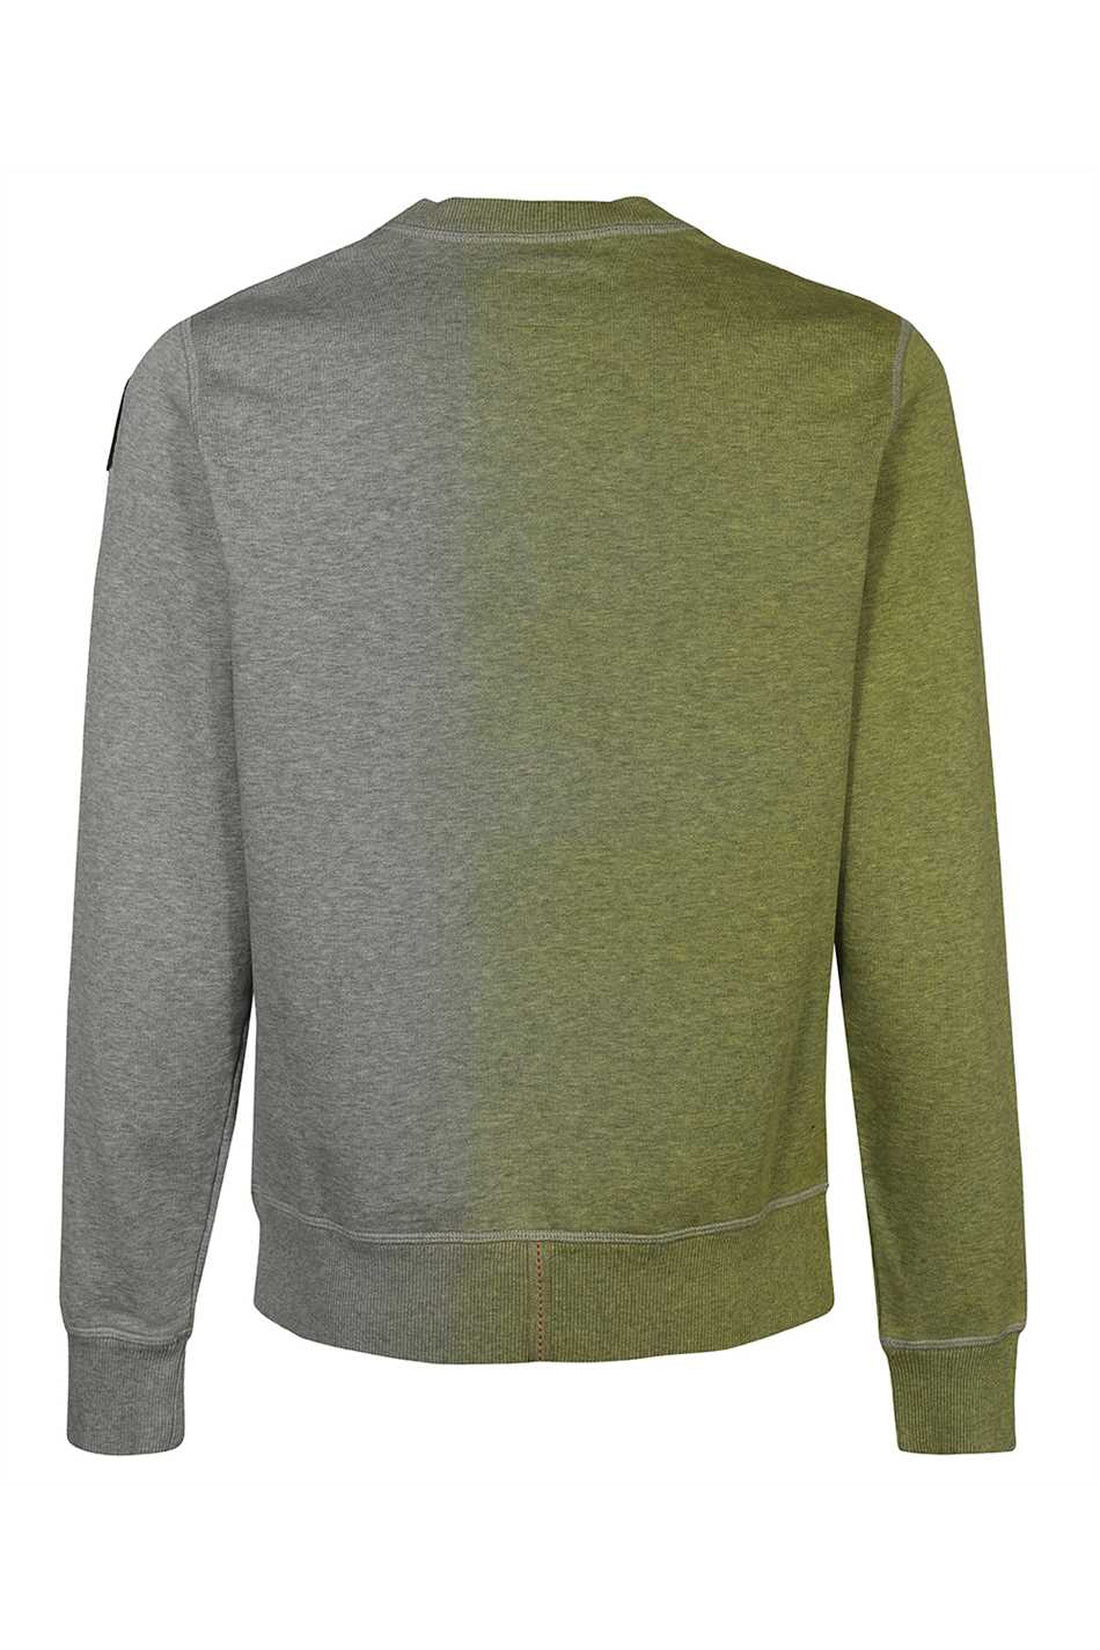 Parajumpers-OUTLET-SALE-Cotton crew-neck sweatshirt-ARCHIVIST